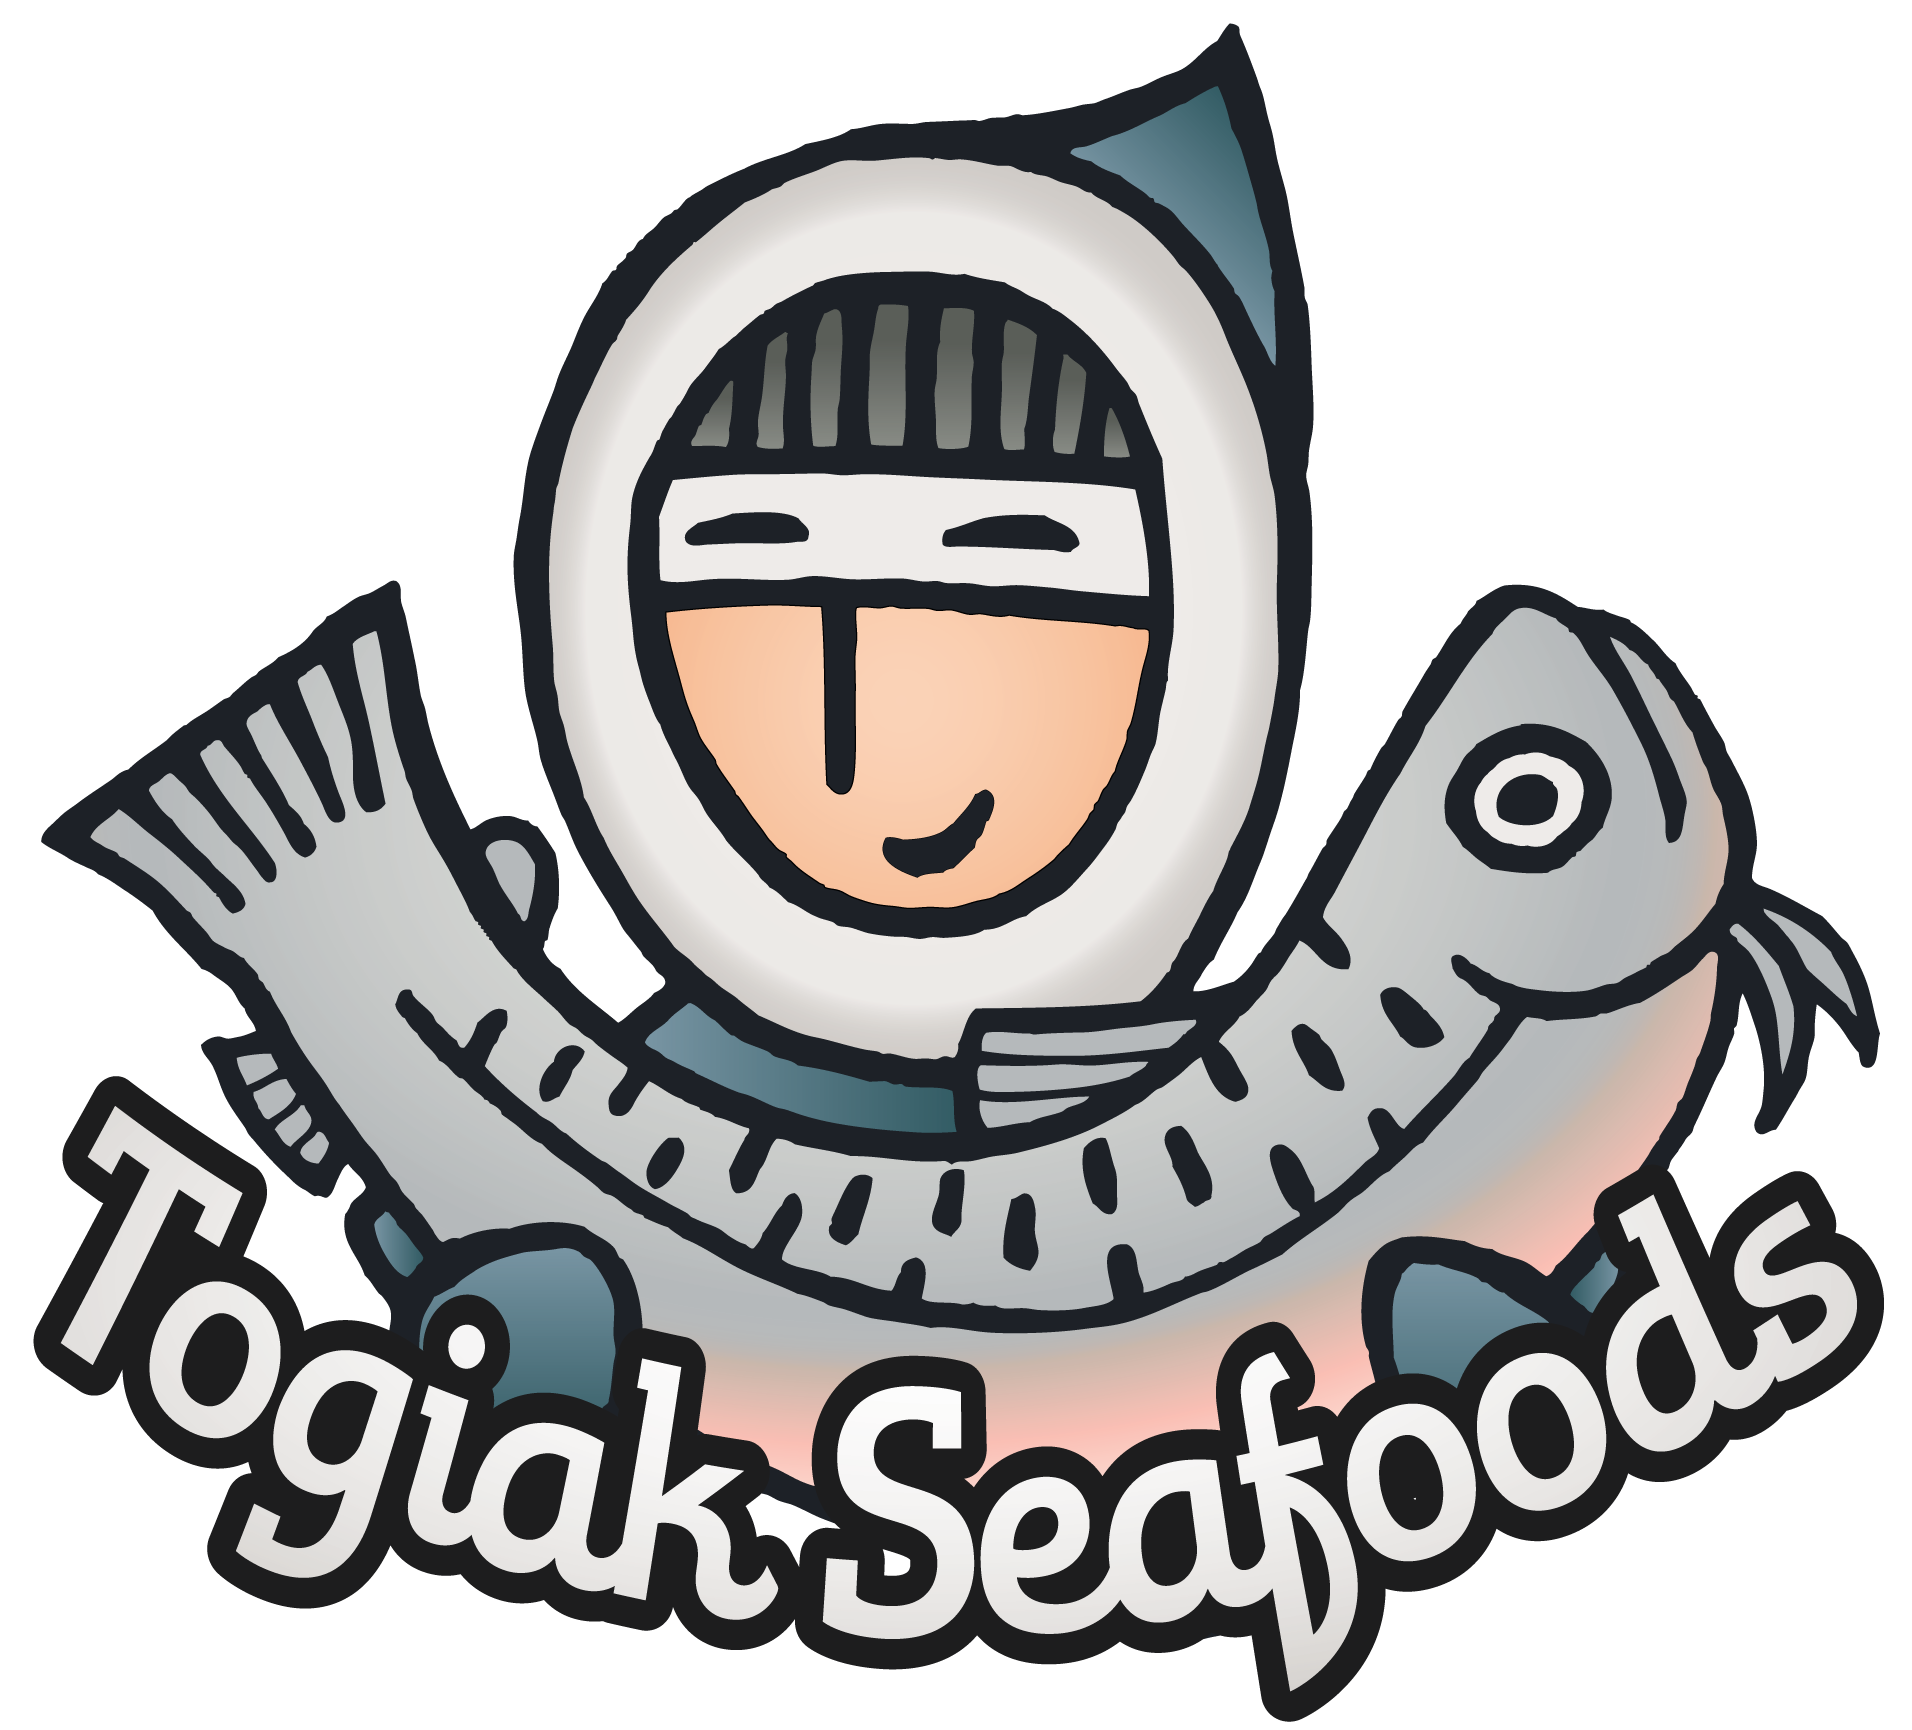 tgk-int-lgo-togiak-seafoods-logo-06mar12-01.png